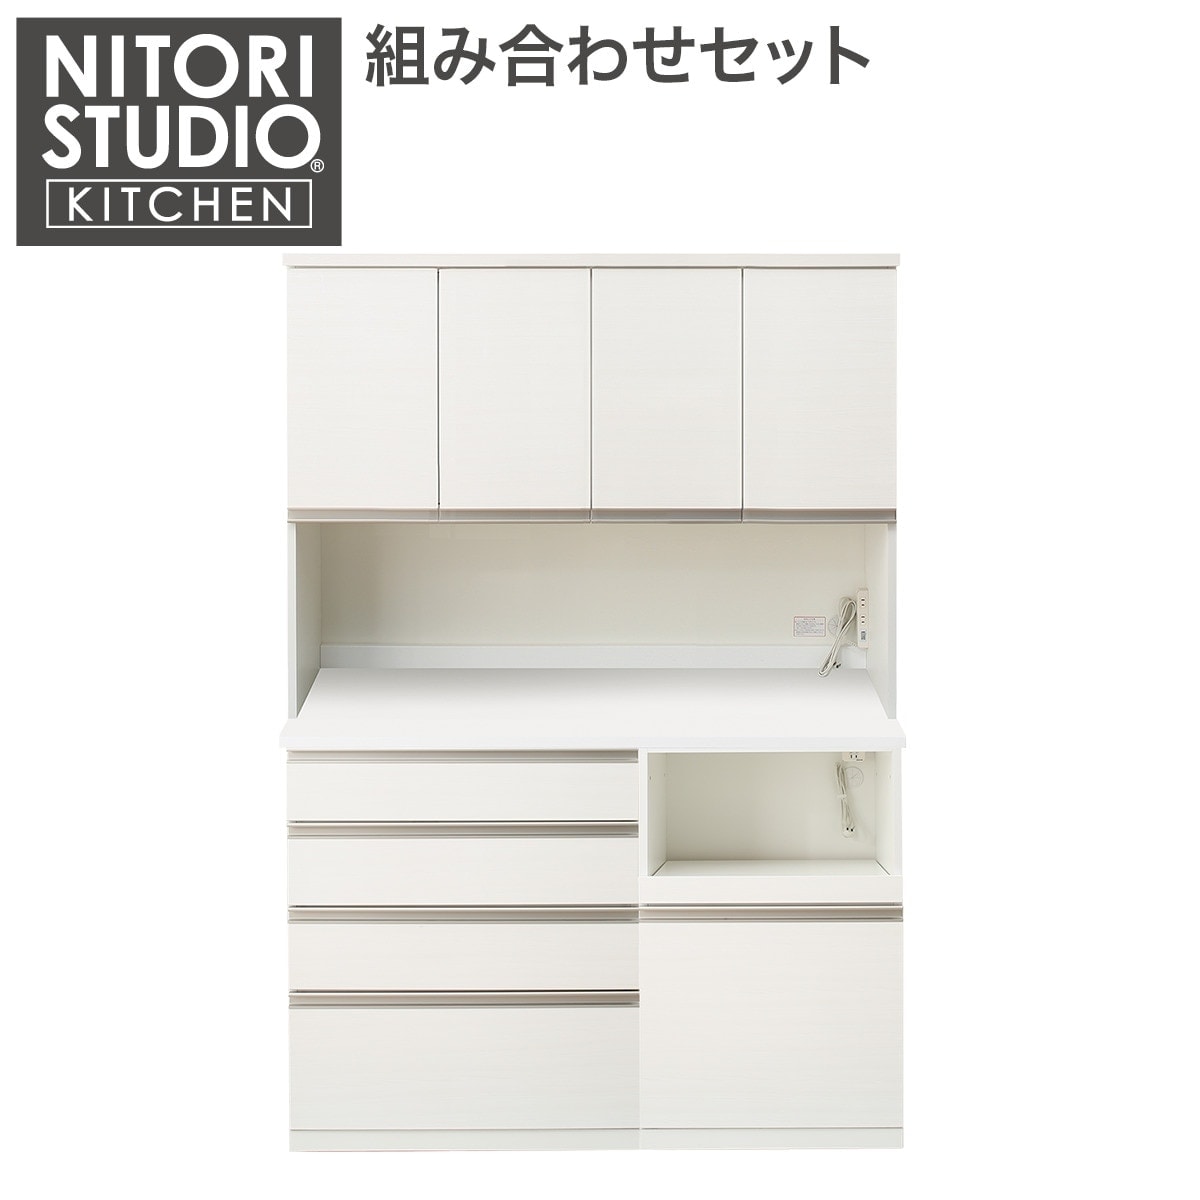 ニトリ組み合わせキッチンボード-リガーレ 5年保証付き - キッチン収納